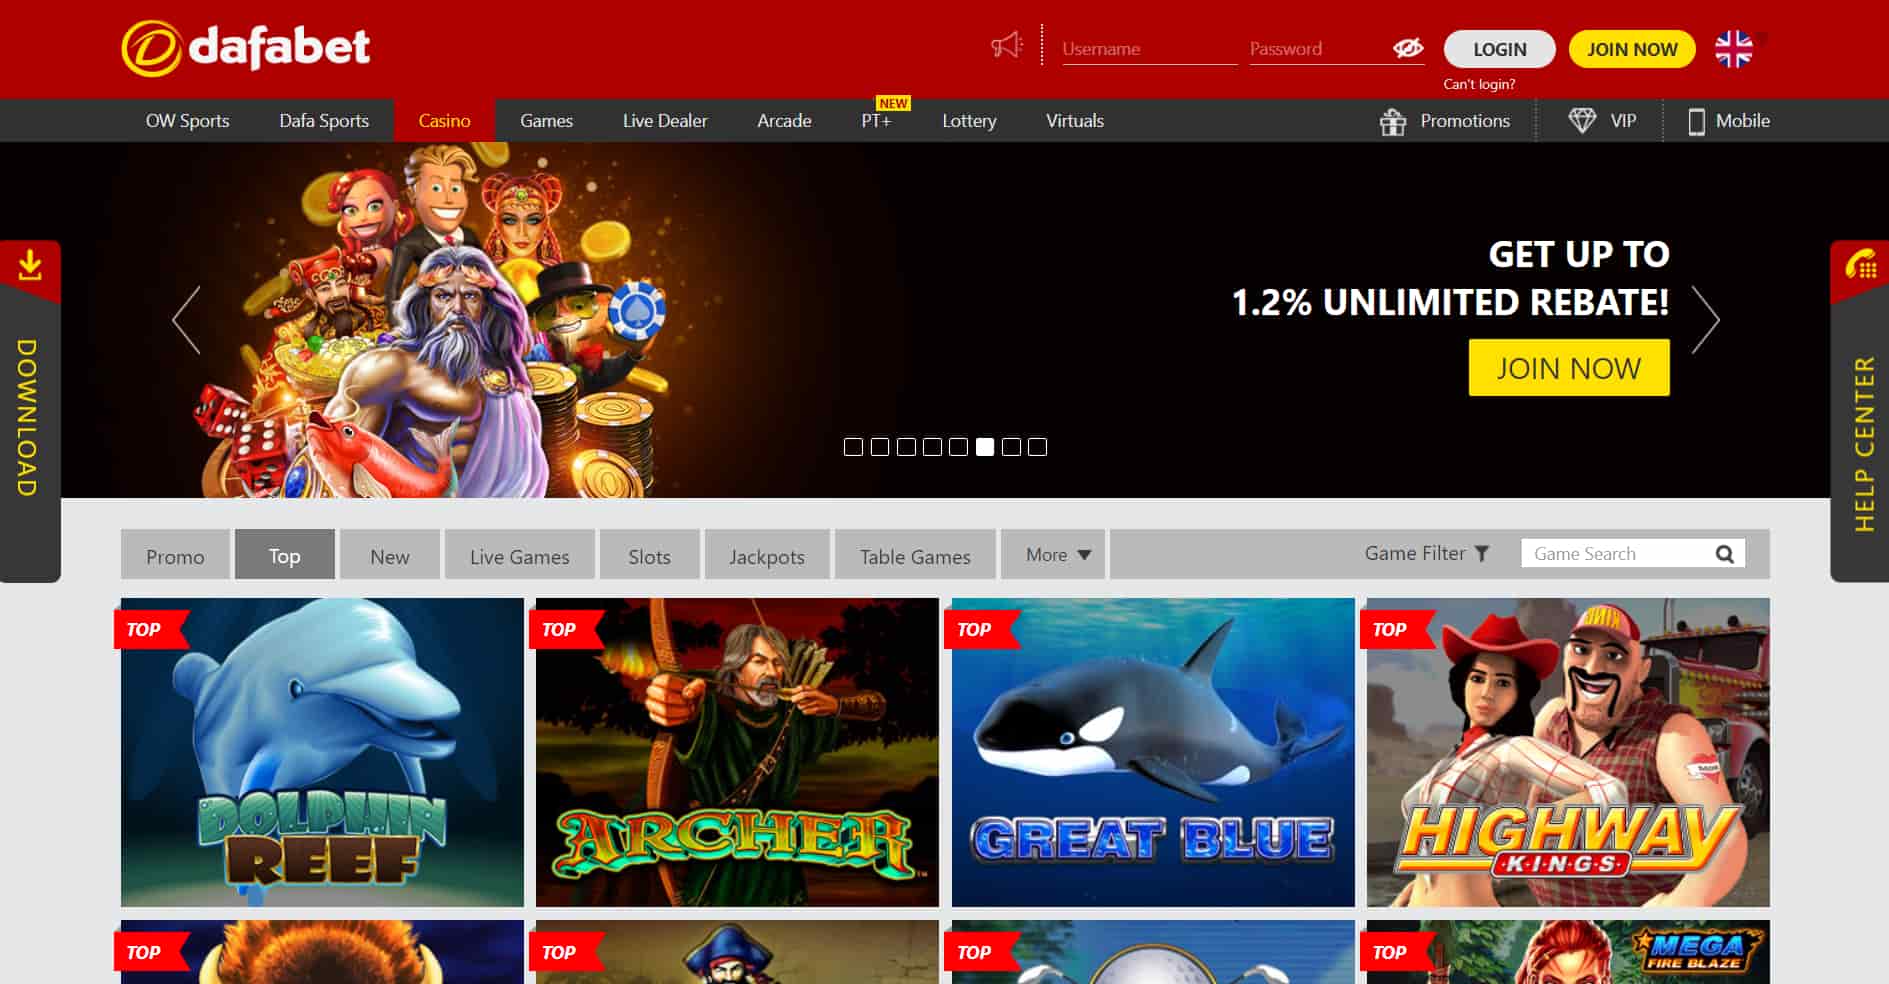 thailand online casino - dafabet